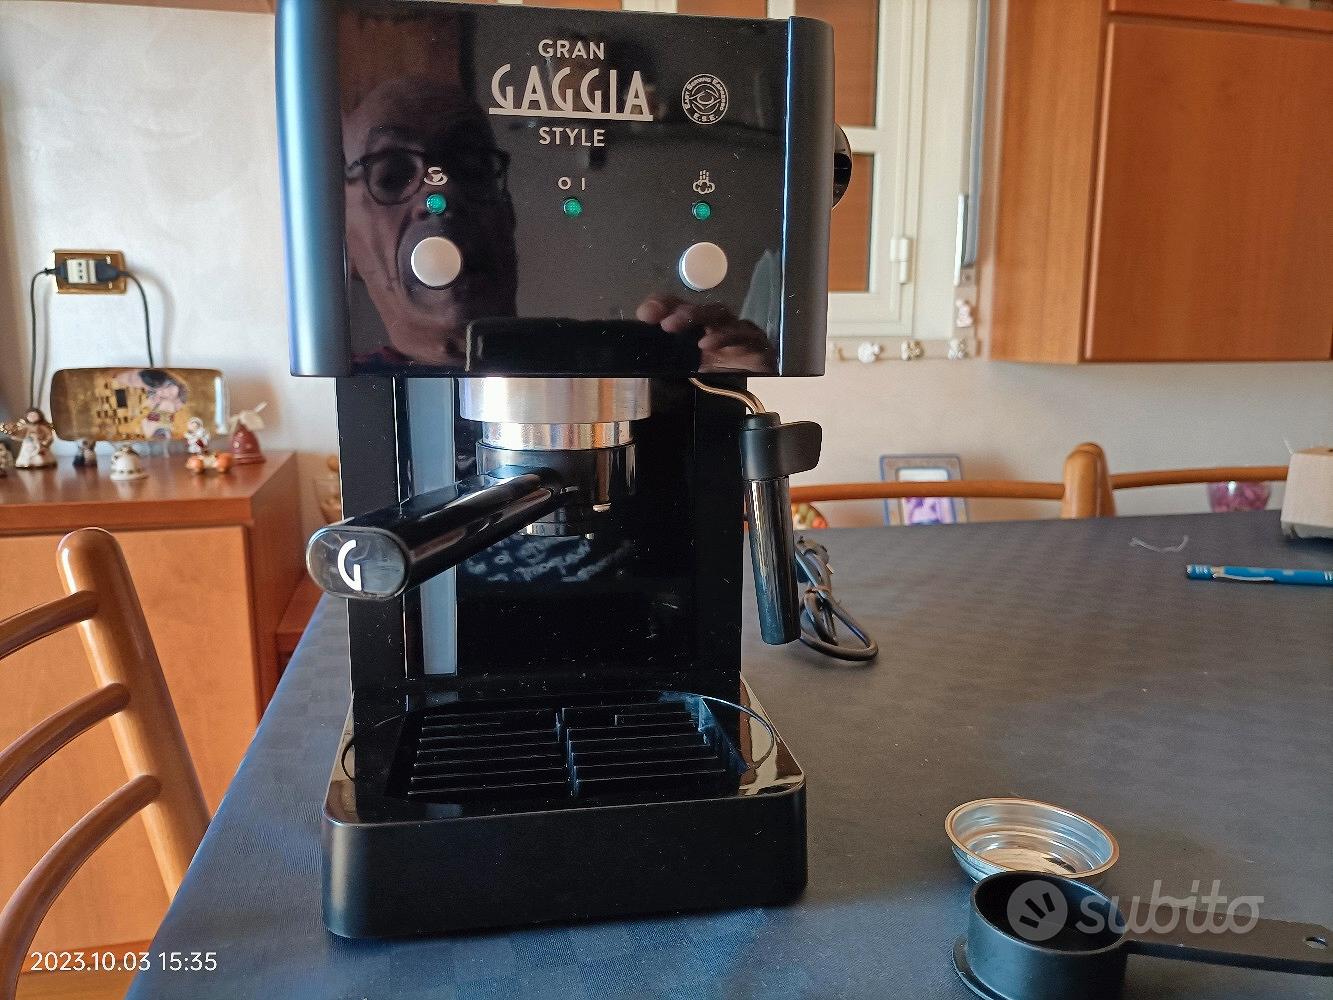 Macchinetta caffè gran gaggia style - Elettrodomestici In vendita a Catania